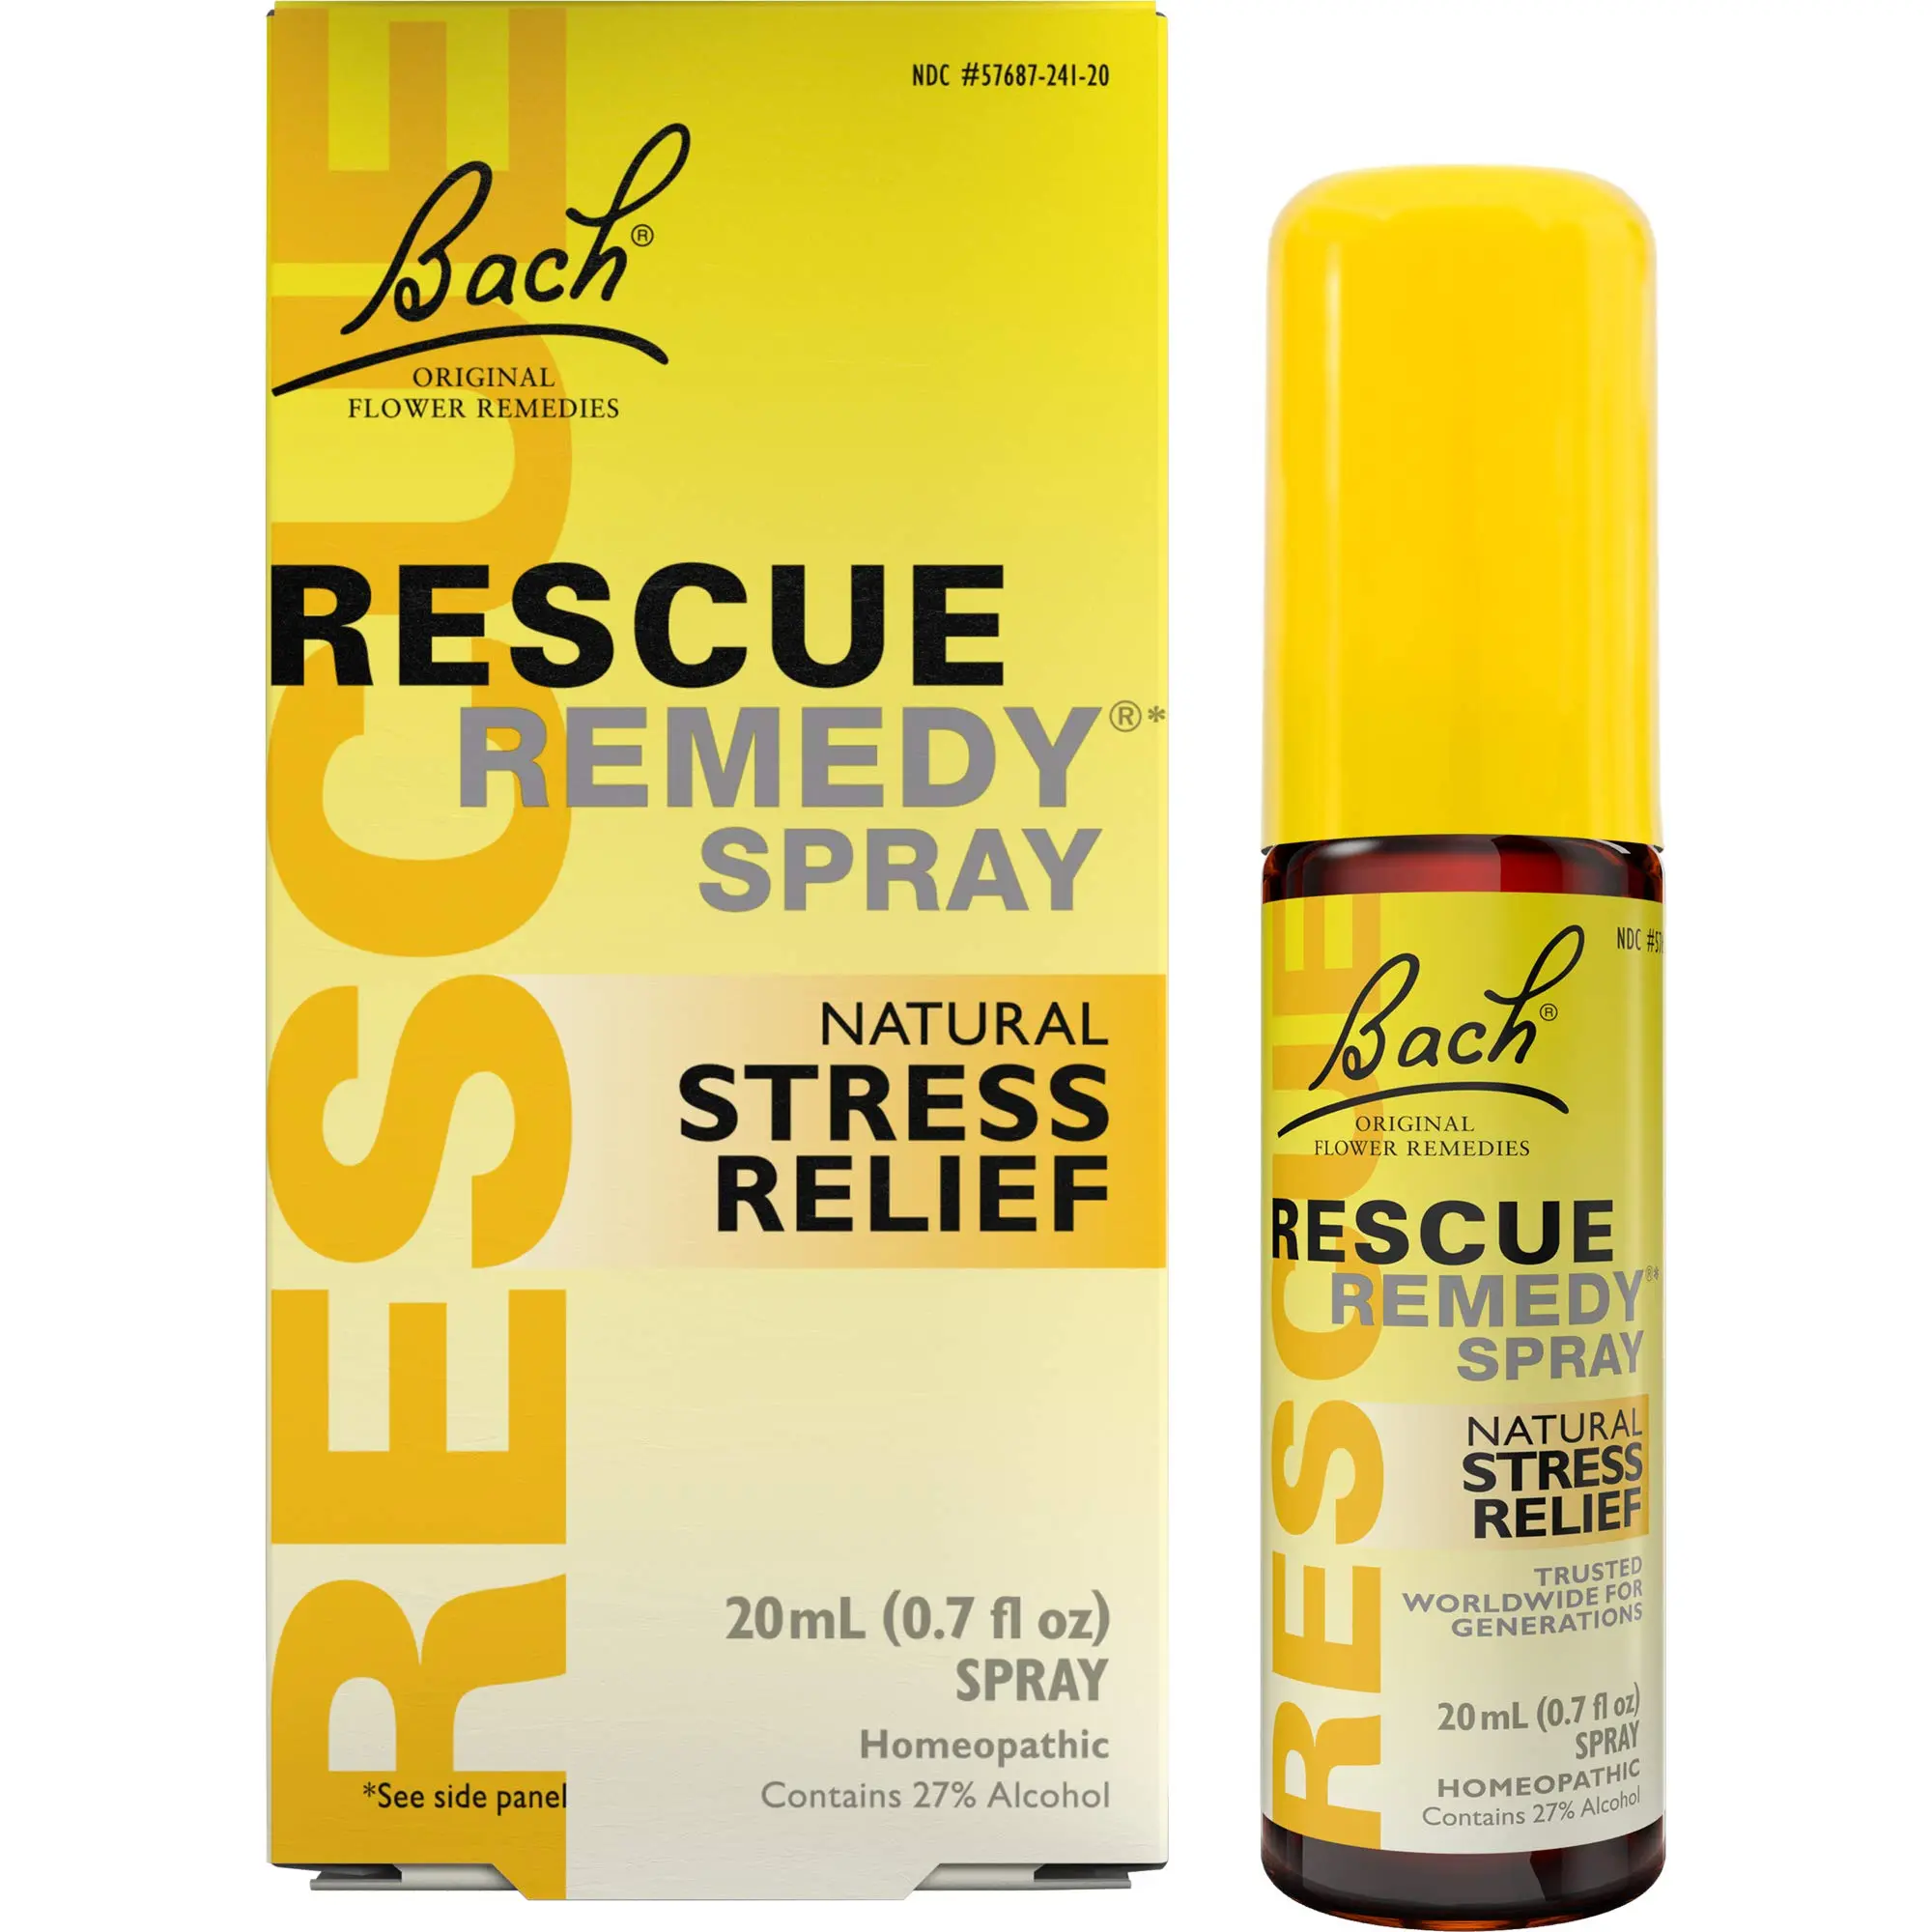 rescue spray fiori di bach - Quanti spruzzi di Rescue Remedy